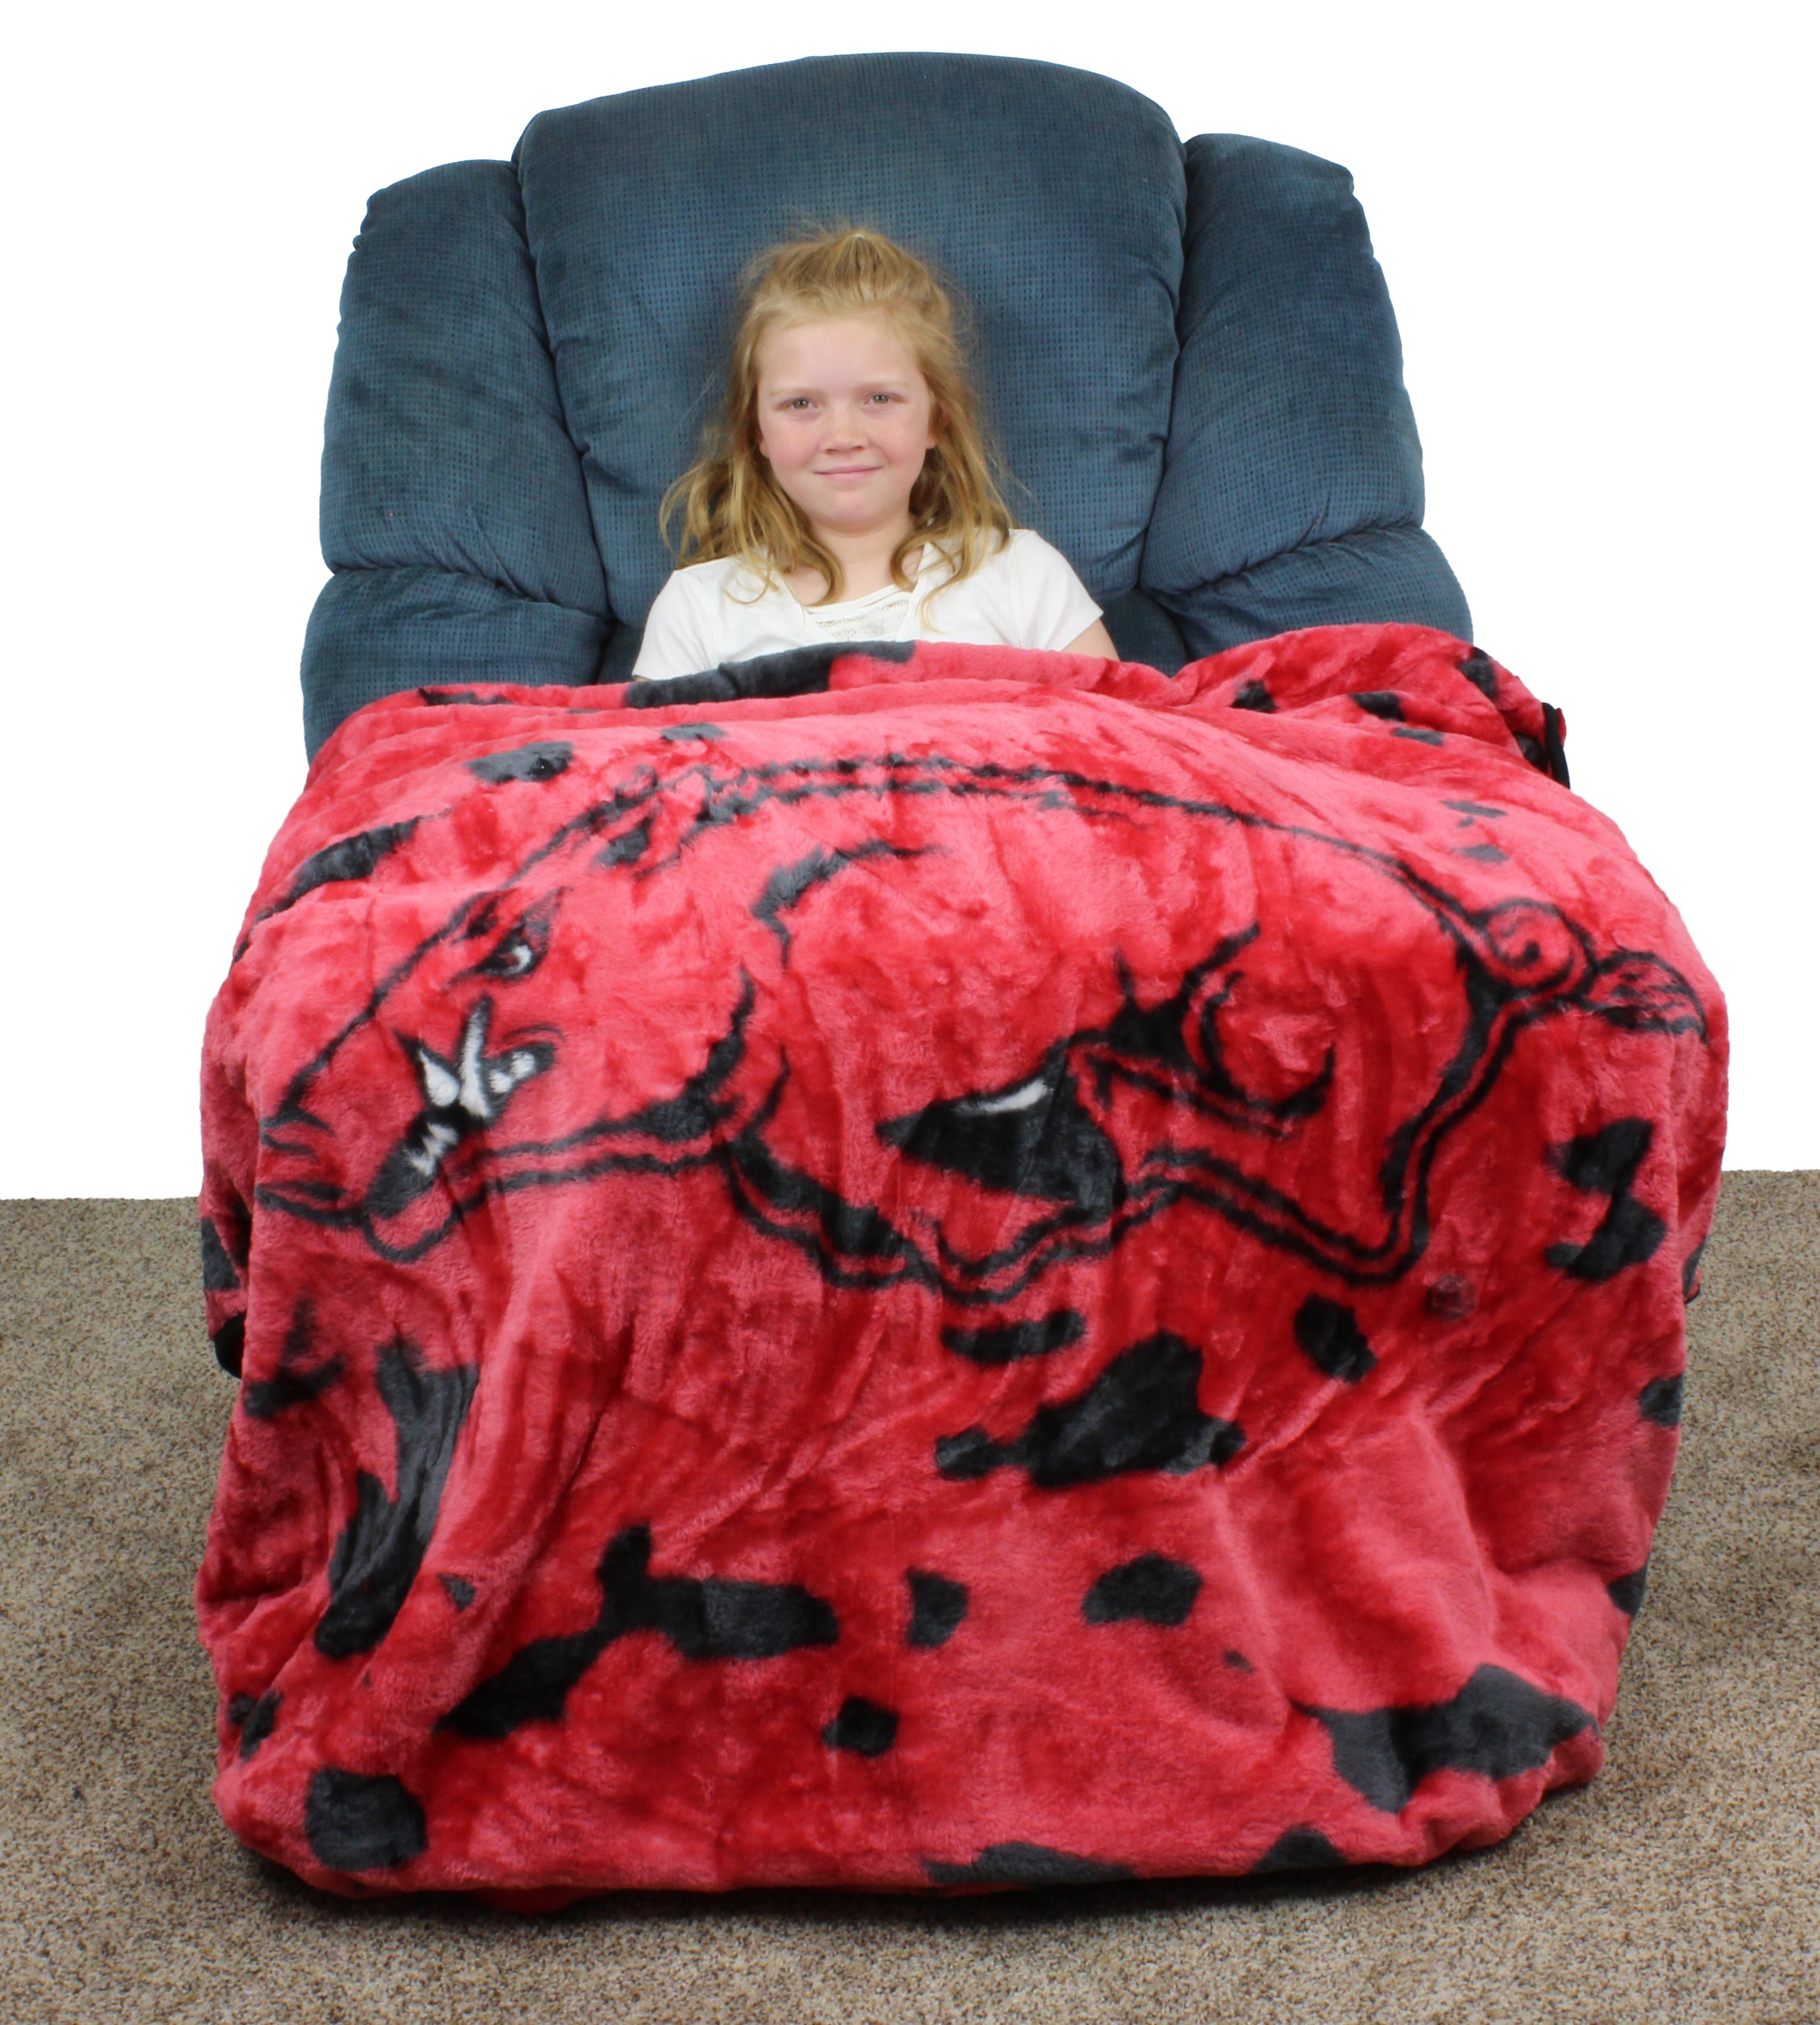 College Covers Arkansas Razorbacks Huge Raschel Throw Blanket, Bedspread, 86" x 63" - image 3 of 8